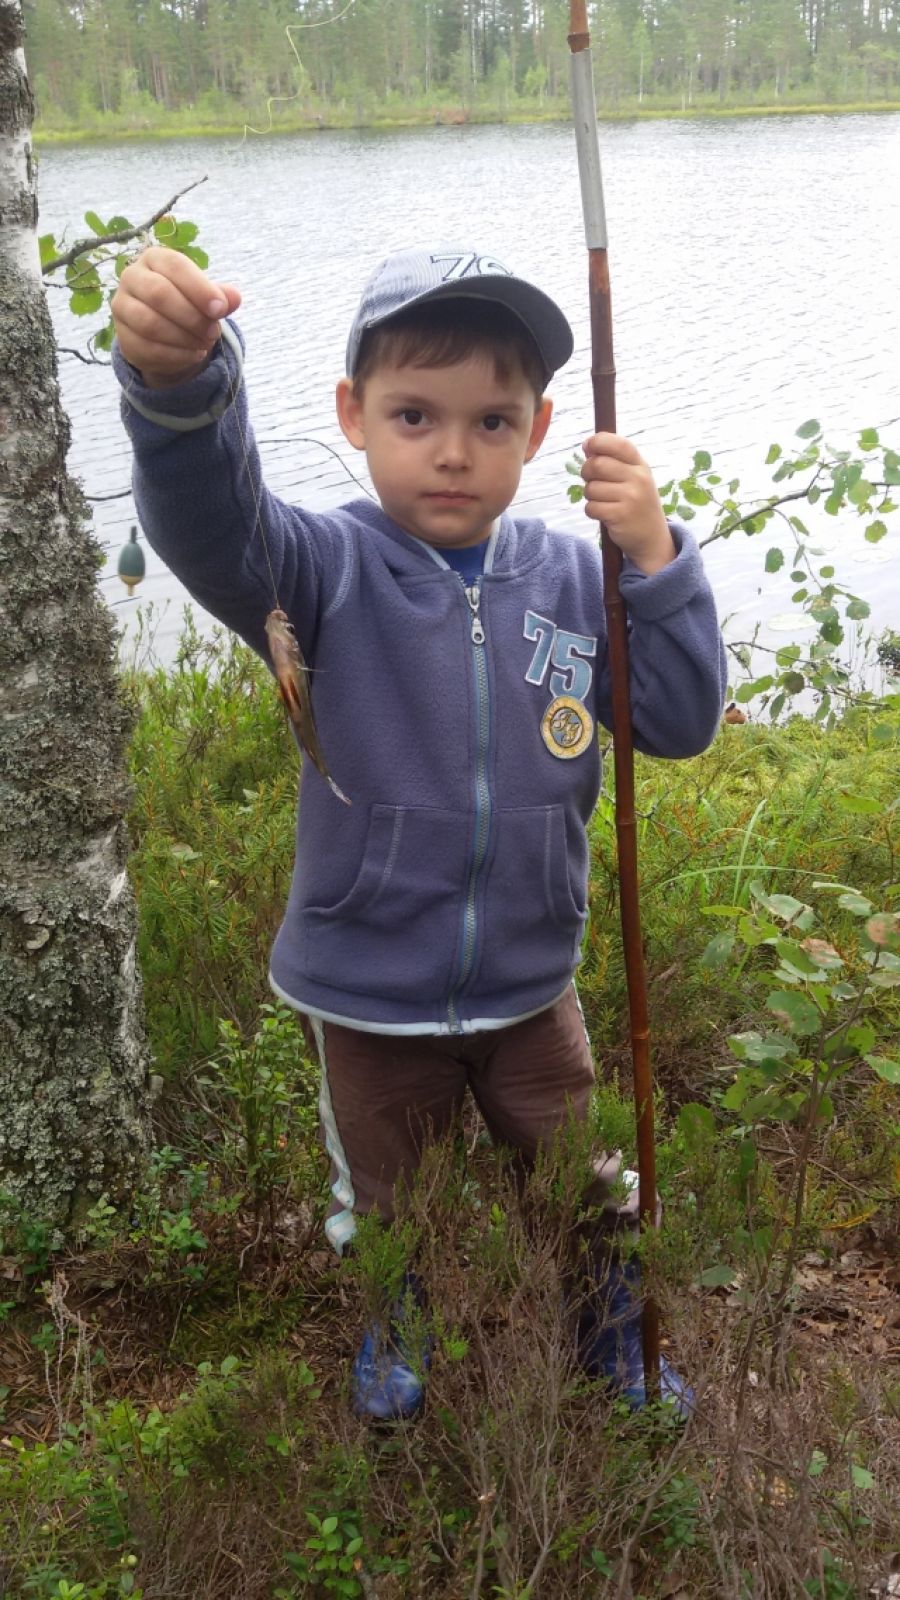 «Мой первый в жизни улов!». Направляем на конкурс фотографию моего 5-летнего сына Дмитрия, который в прошлом году поймал свою первую рыбу, окуня, на озере в поселке Лейпясуо.